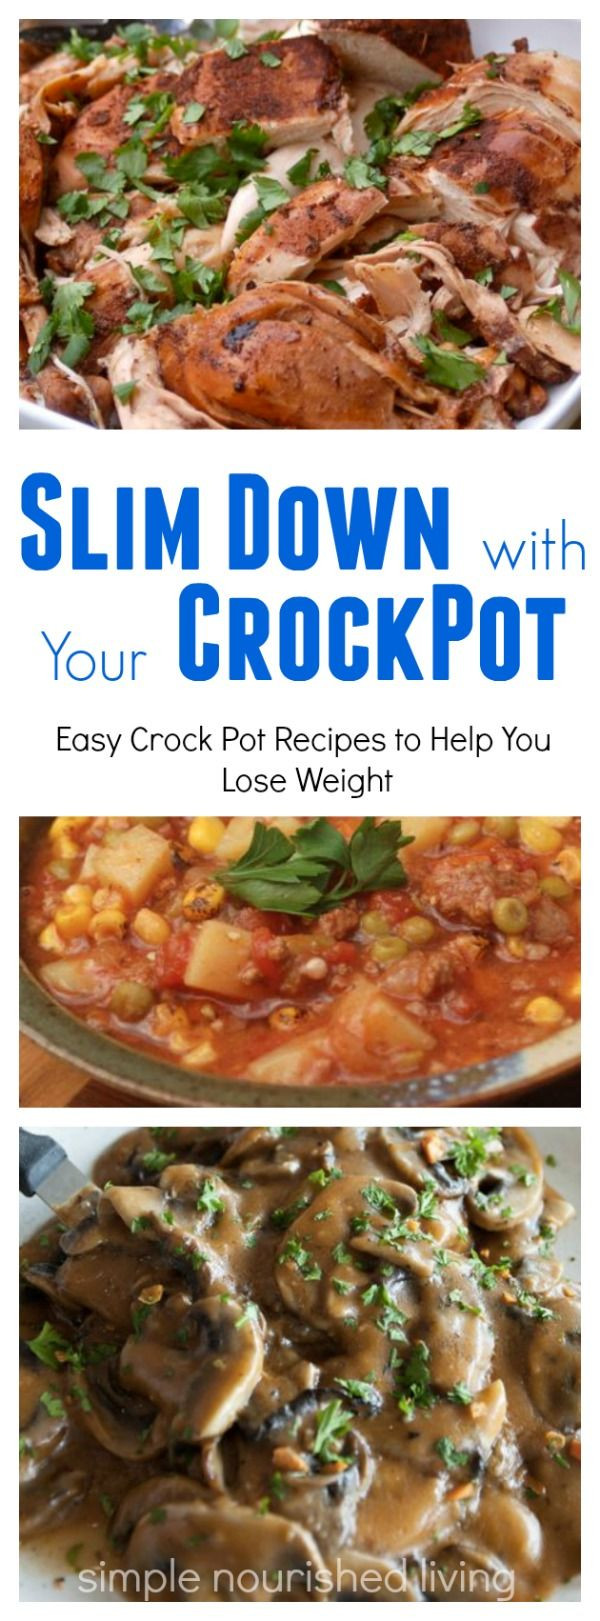 Low Calorie Crock Pot Dinners
 17 Best ideas about Low Calorie Dinners on Pinterest